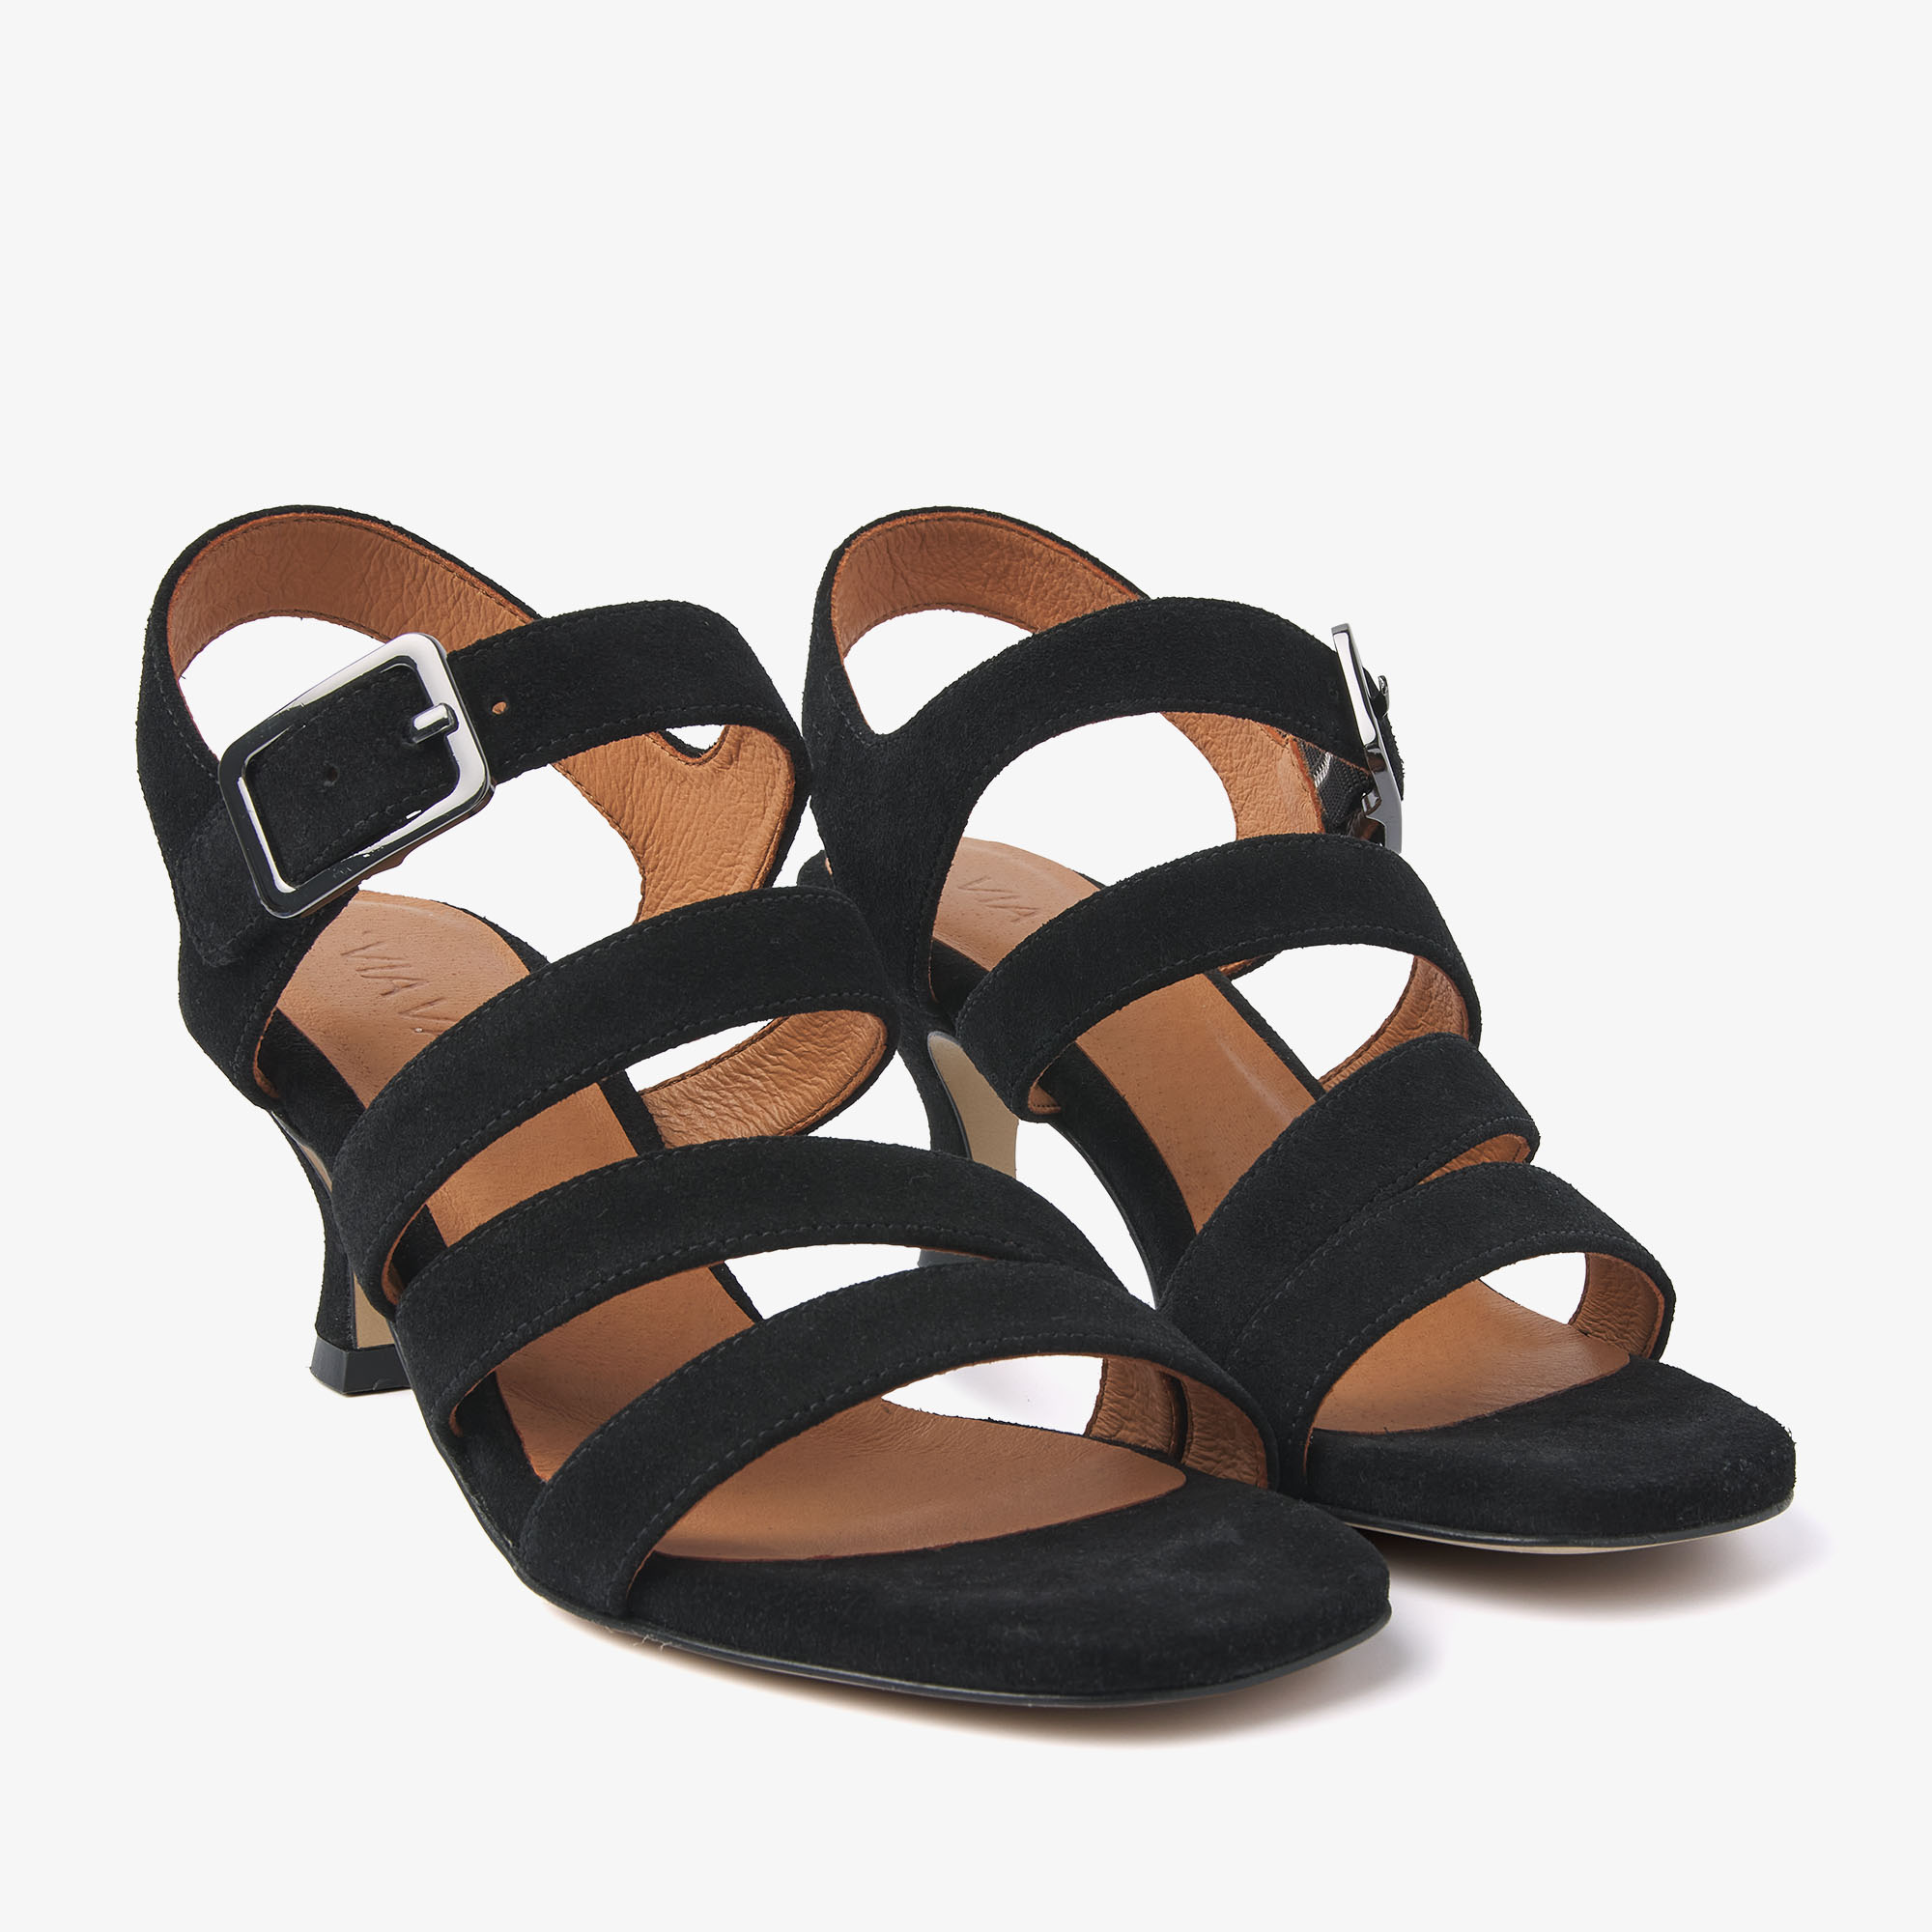 Zwarte dames sandalen Viavai - 60001-02-900